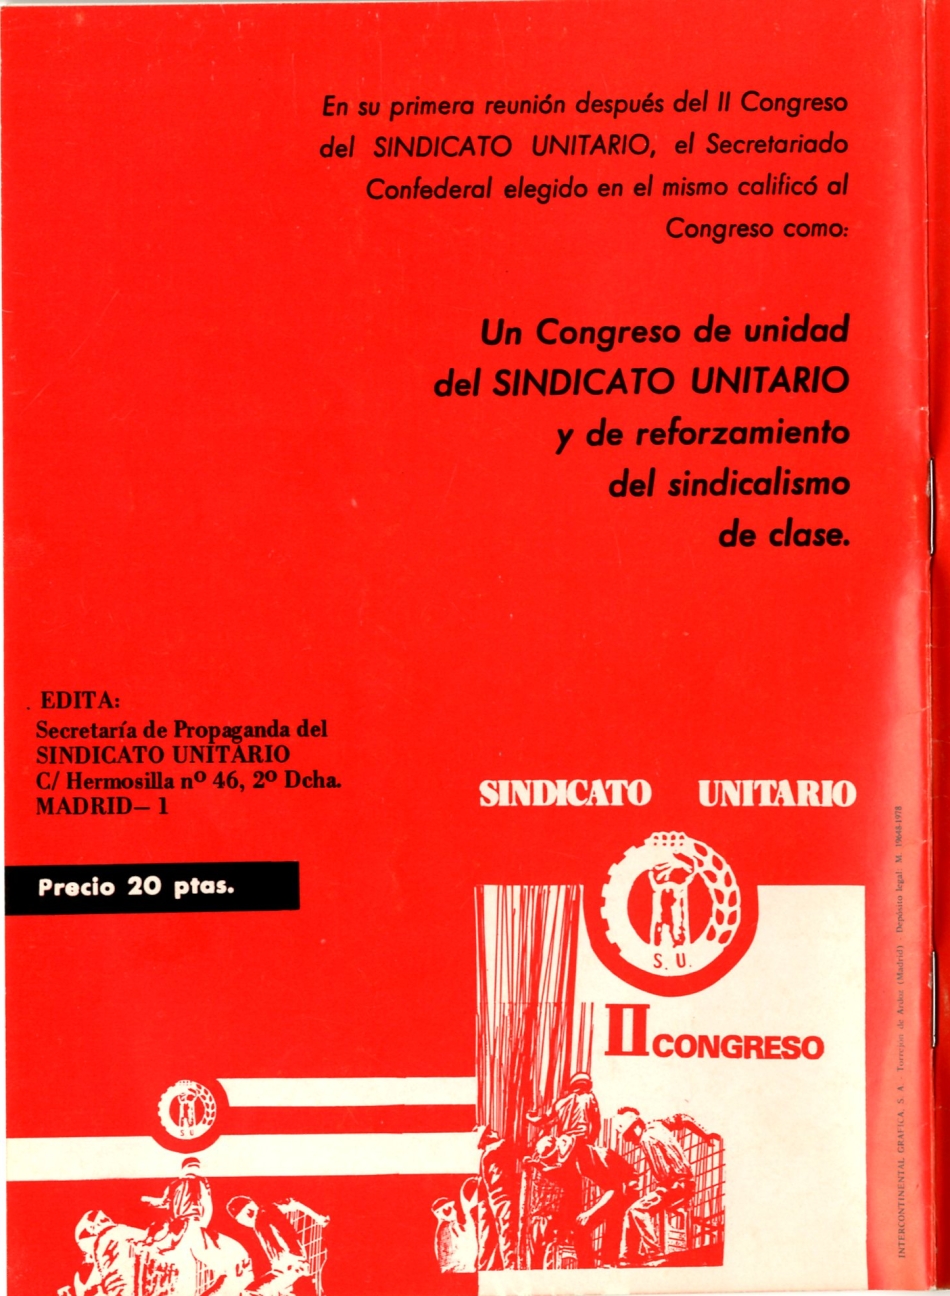  Proyecto estatustos UJM, Organización Revolucionaria de los Trabajadores, SU, ORT, UJM, PRT, Libertad Sindical 